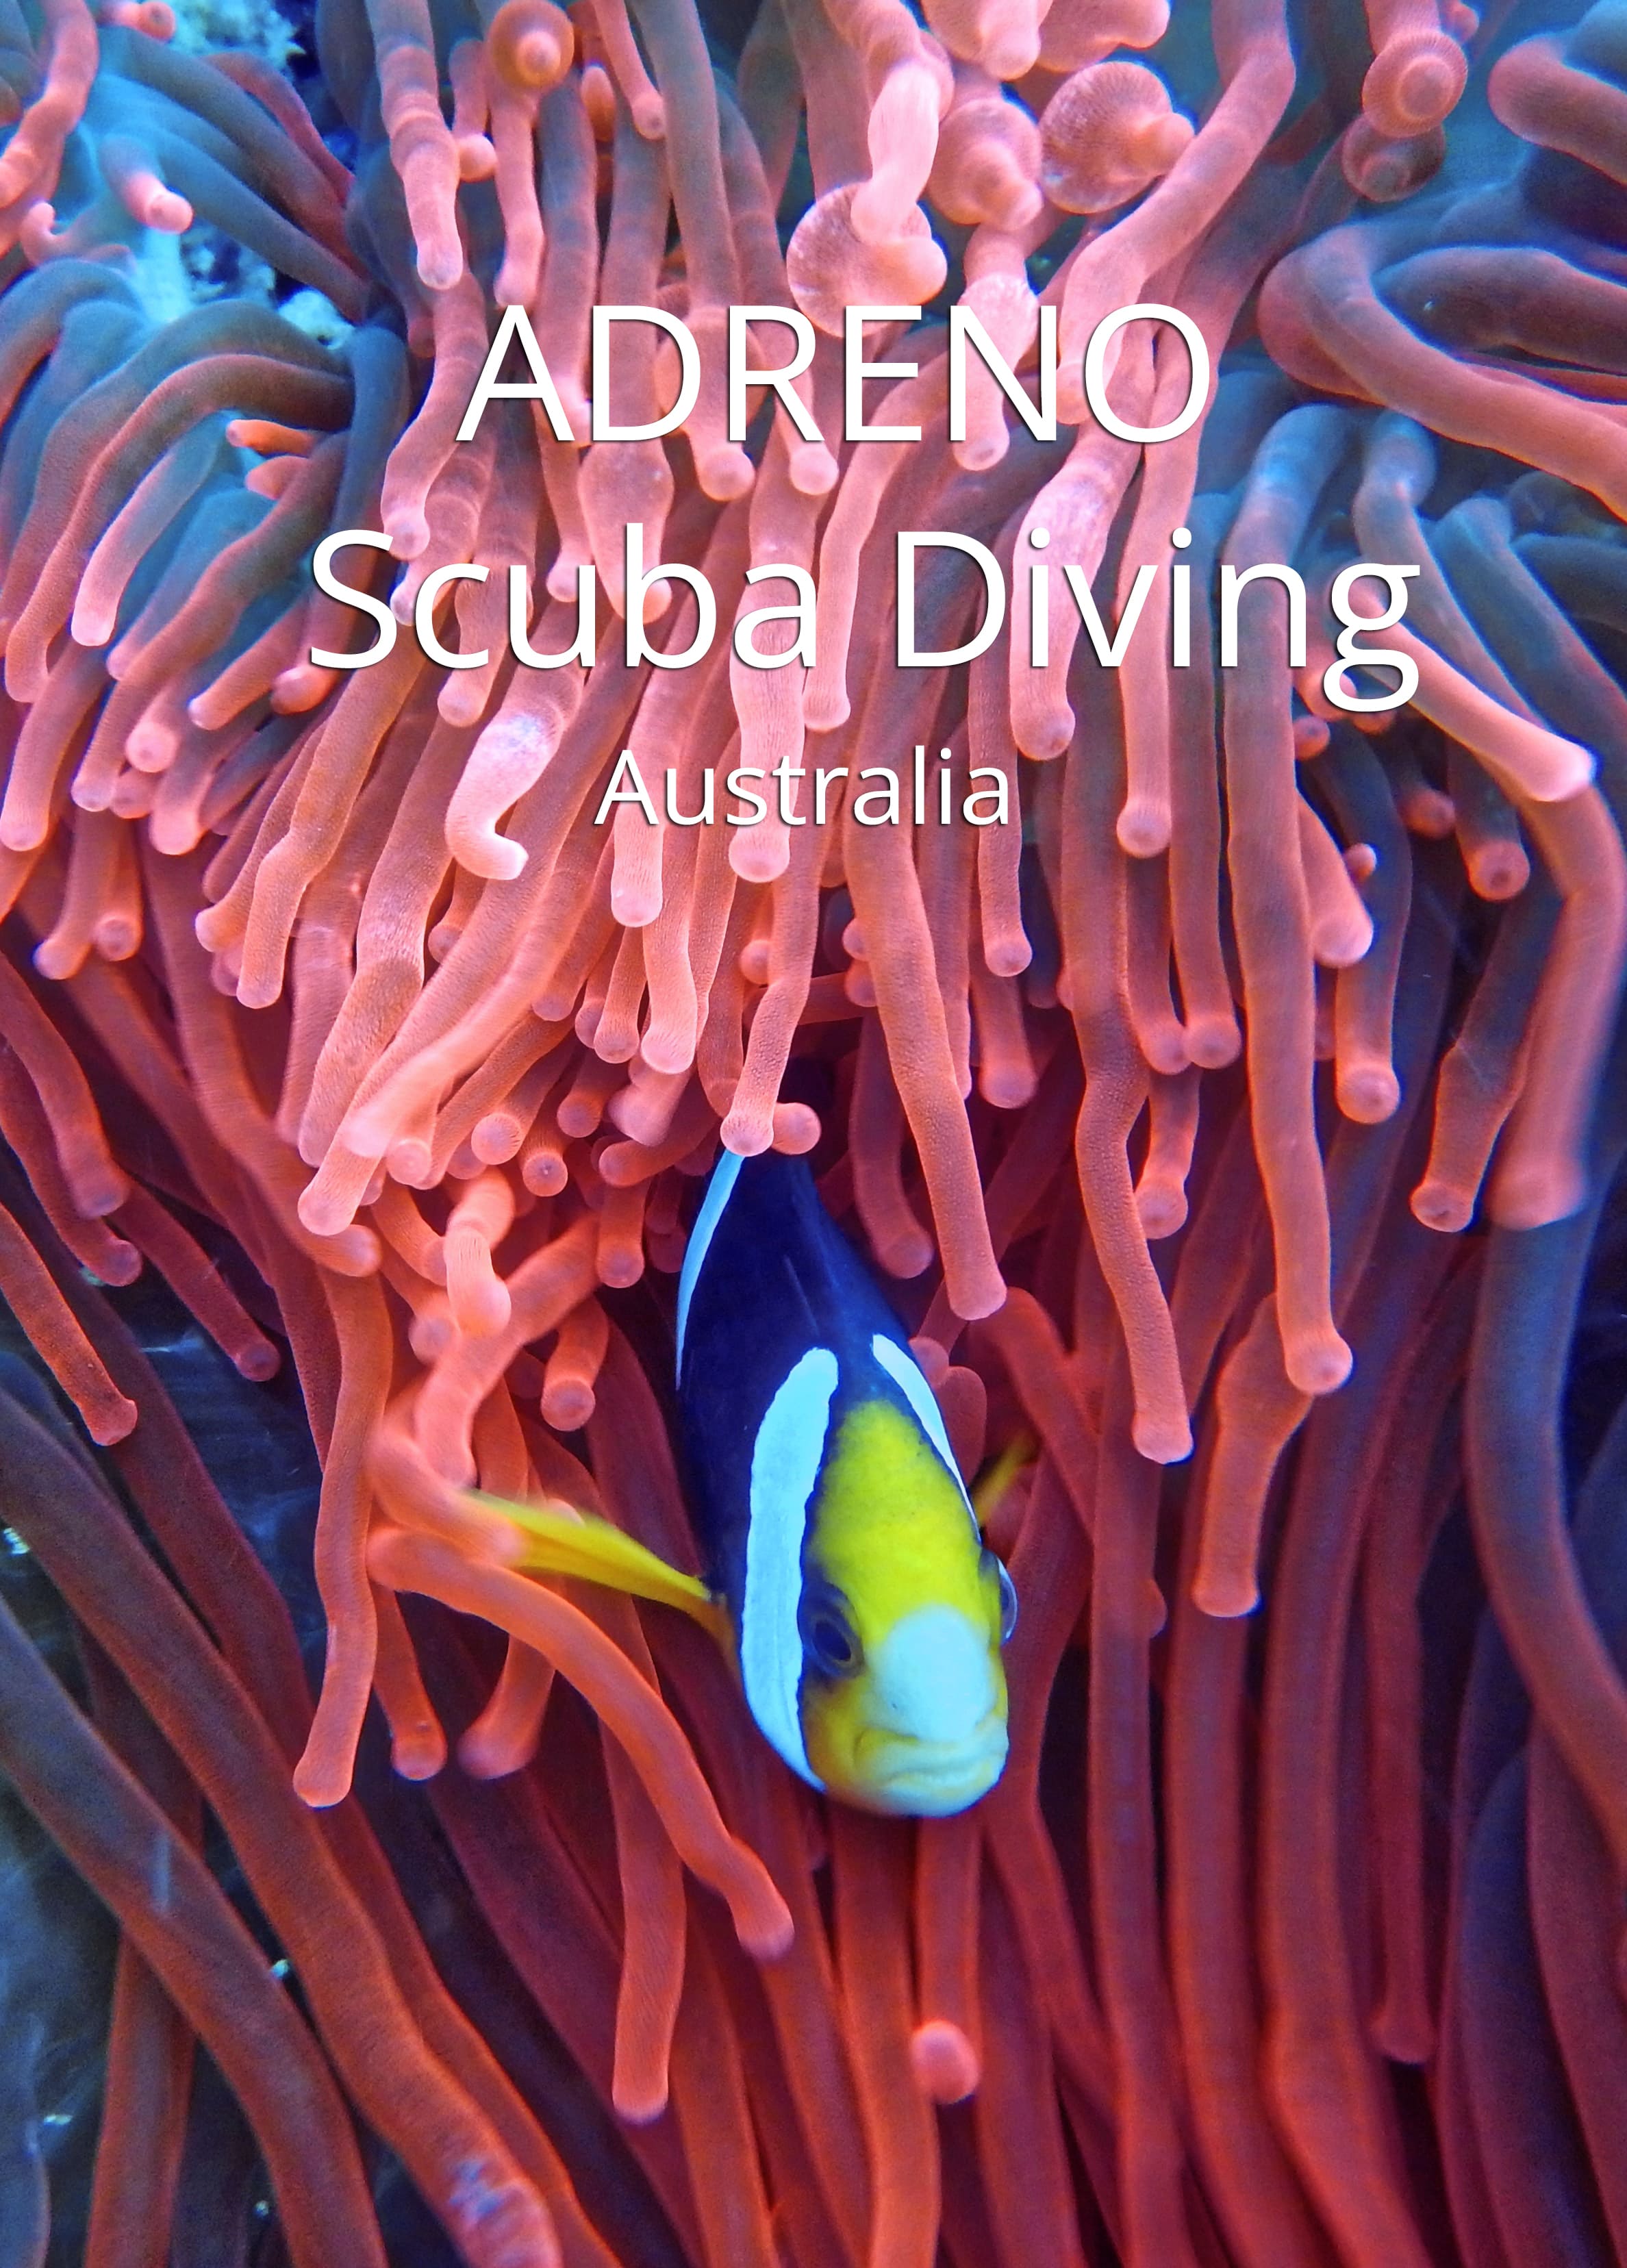 Adreno Scuba Diving Australia The Scuba Directory